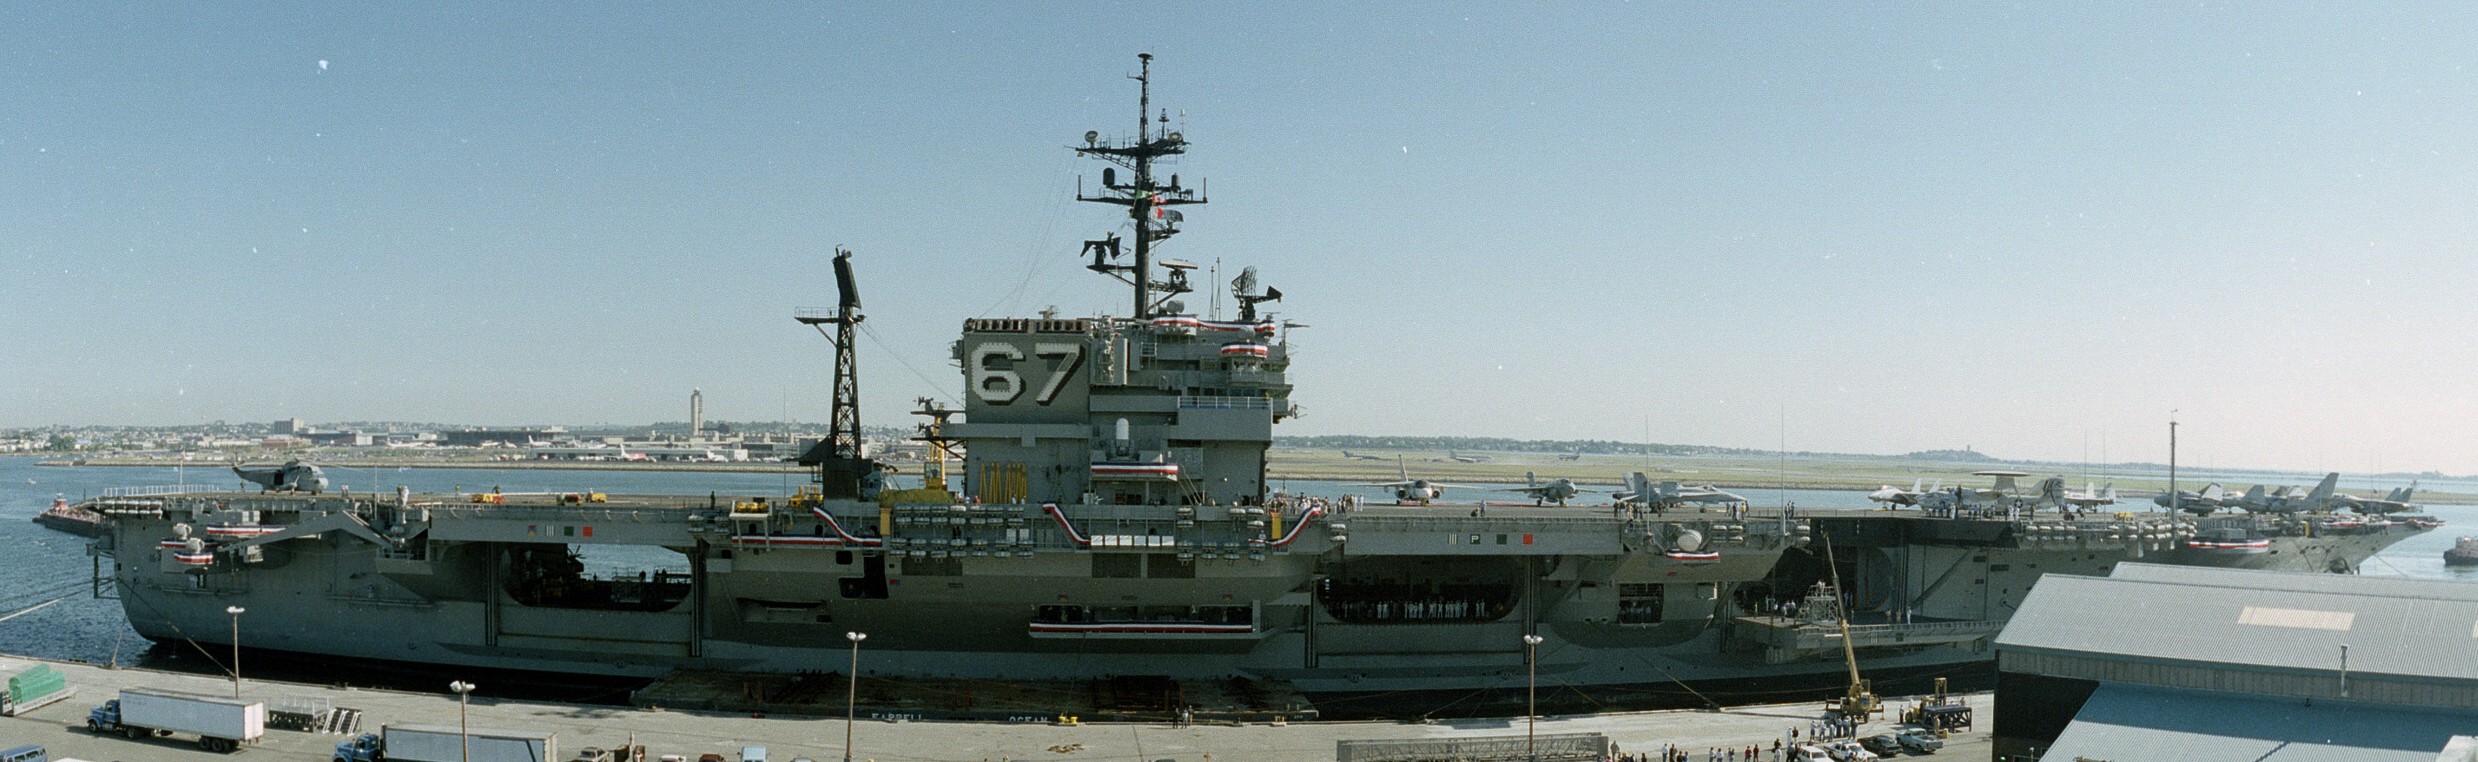 cv-67 uss john f. kennedy aircraft carrier us navy boston massachusetts 108